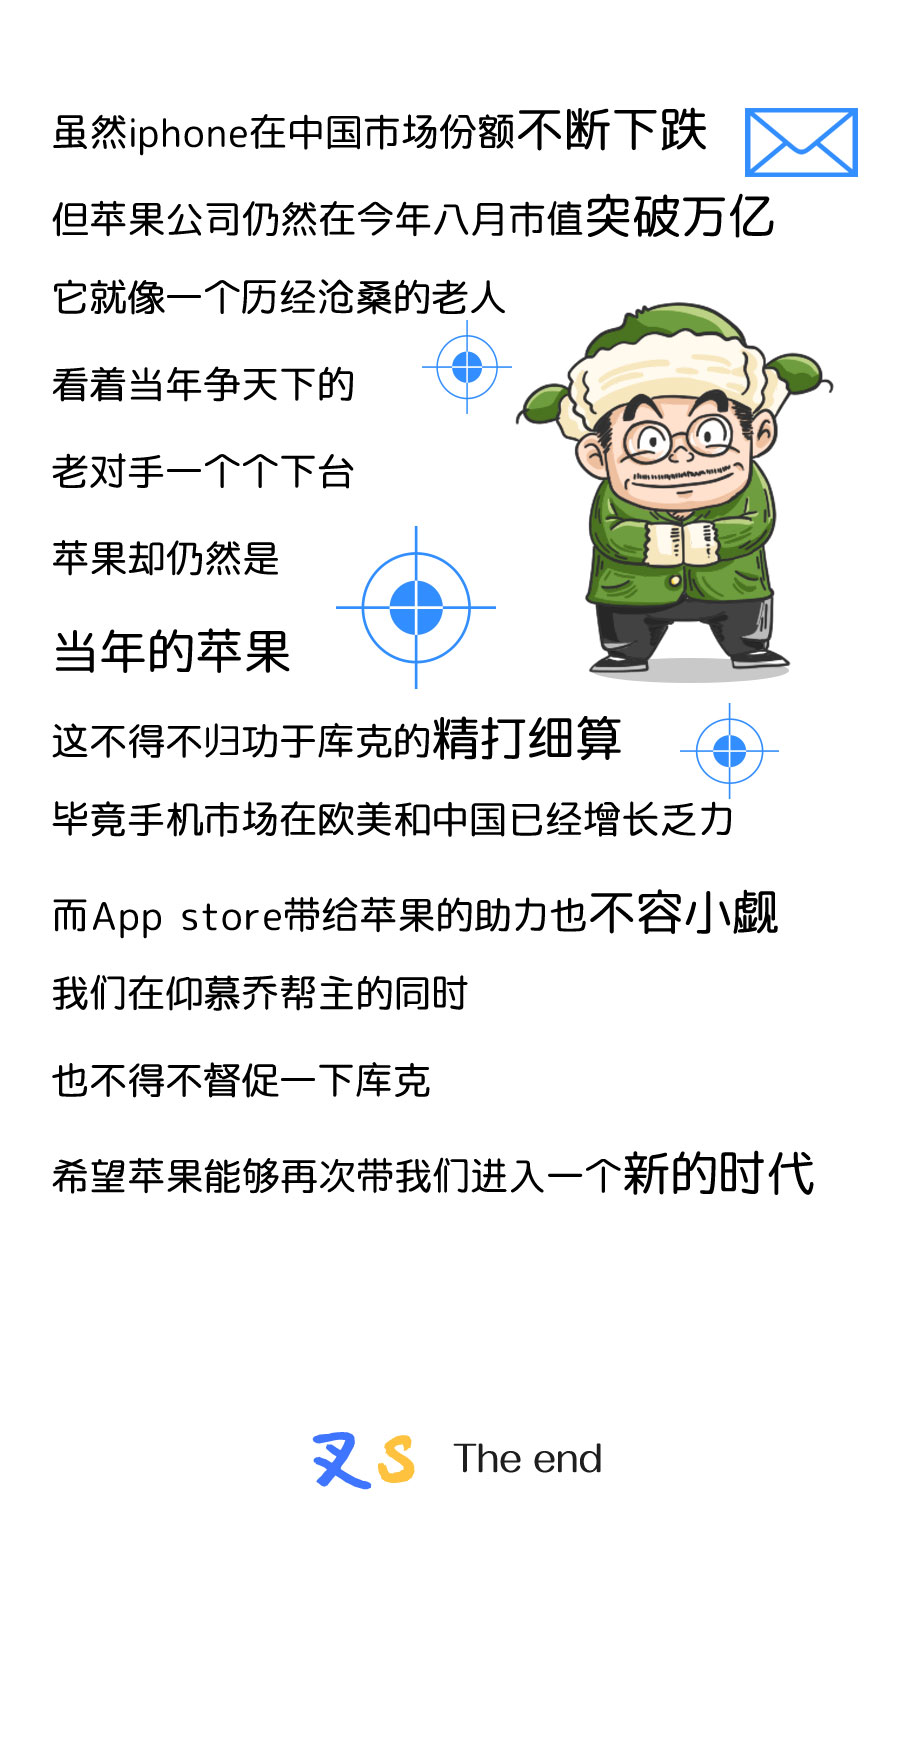 IPHONE篇_30.jpg